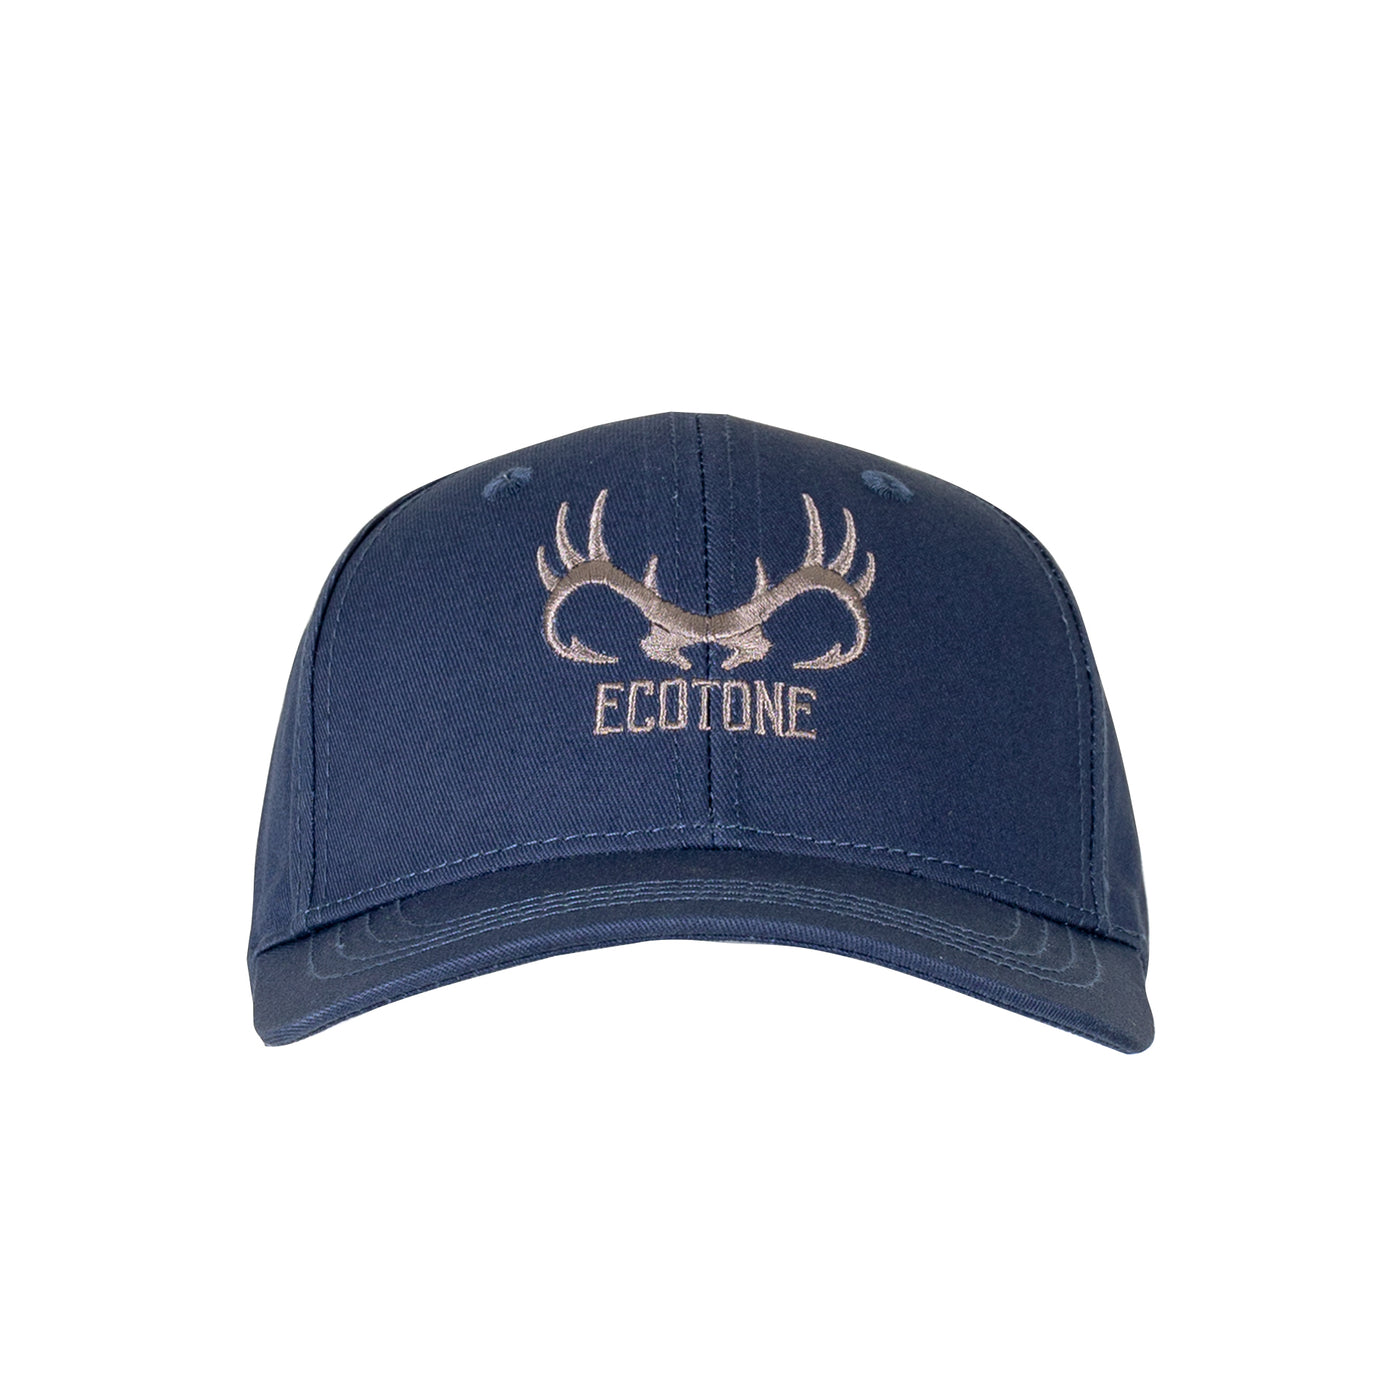 Team Ecotone men's cap